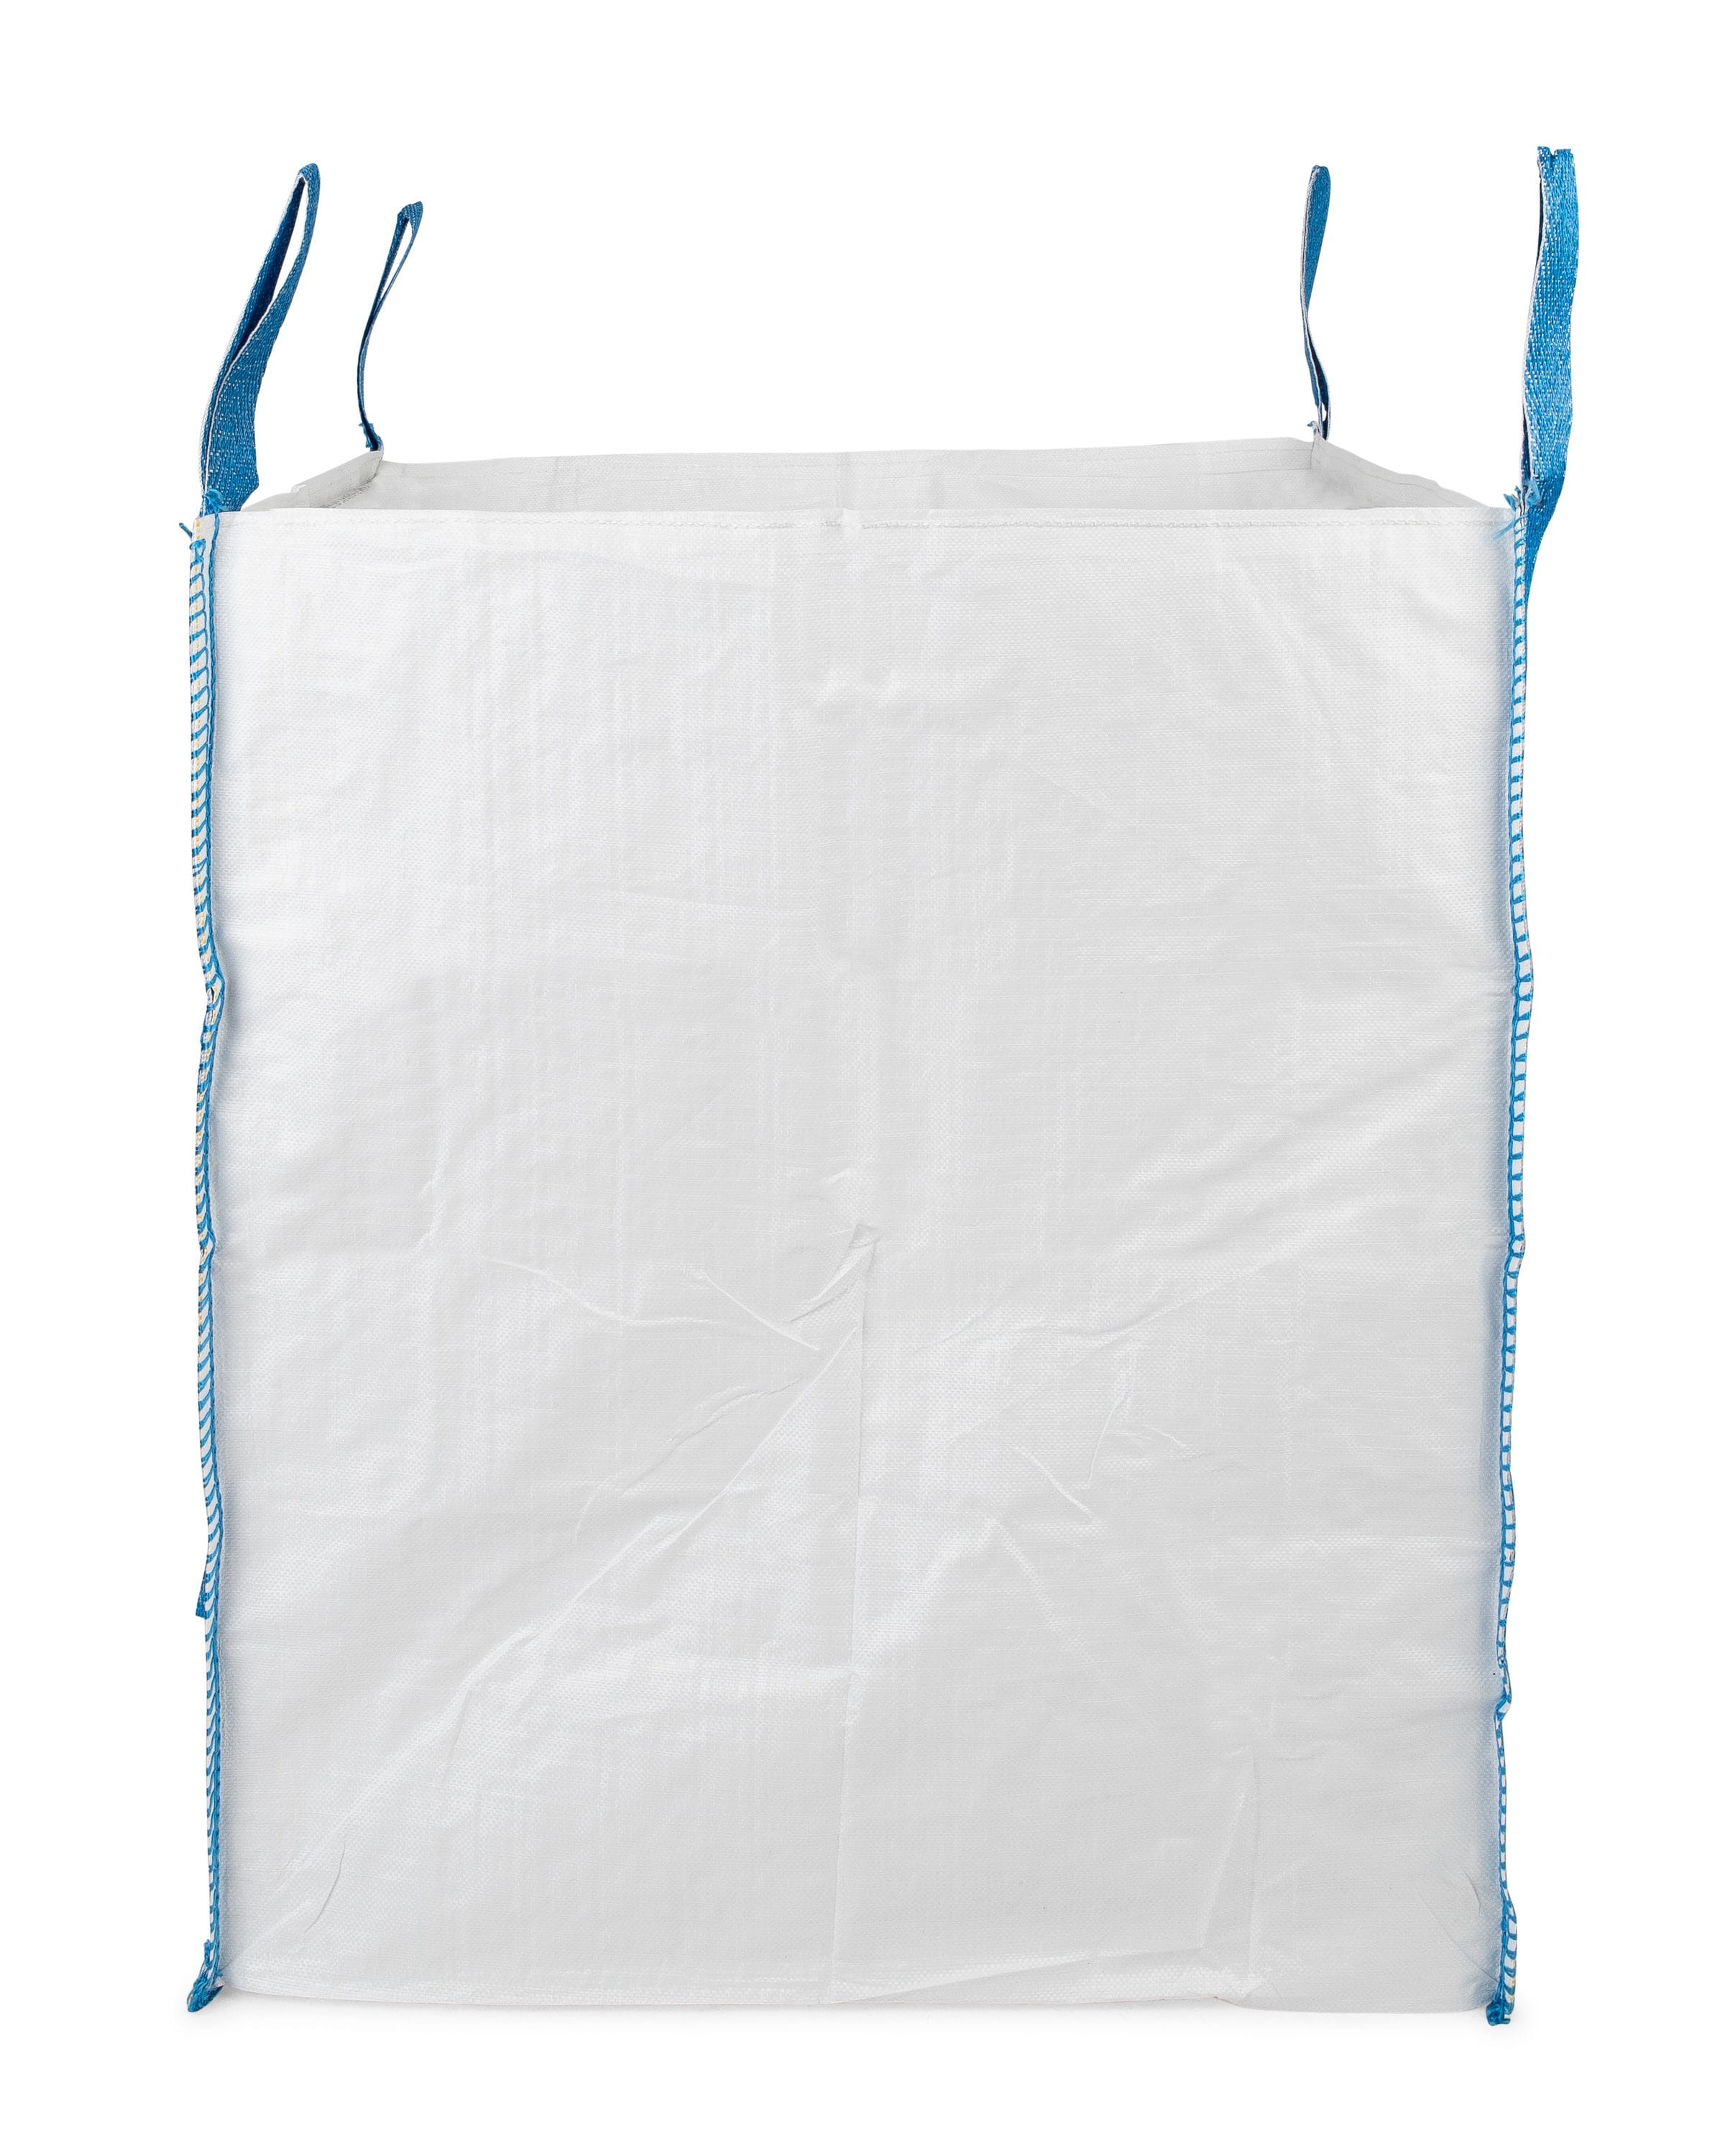 Durasack Heavy Duty Contractor Bag, 40-Gallon Reusable White Woven Polypropylene Construction Demo Contractor Clean-Up Bag, Pack of 20